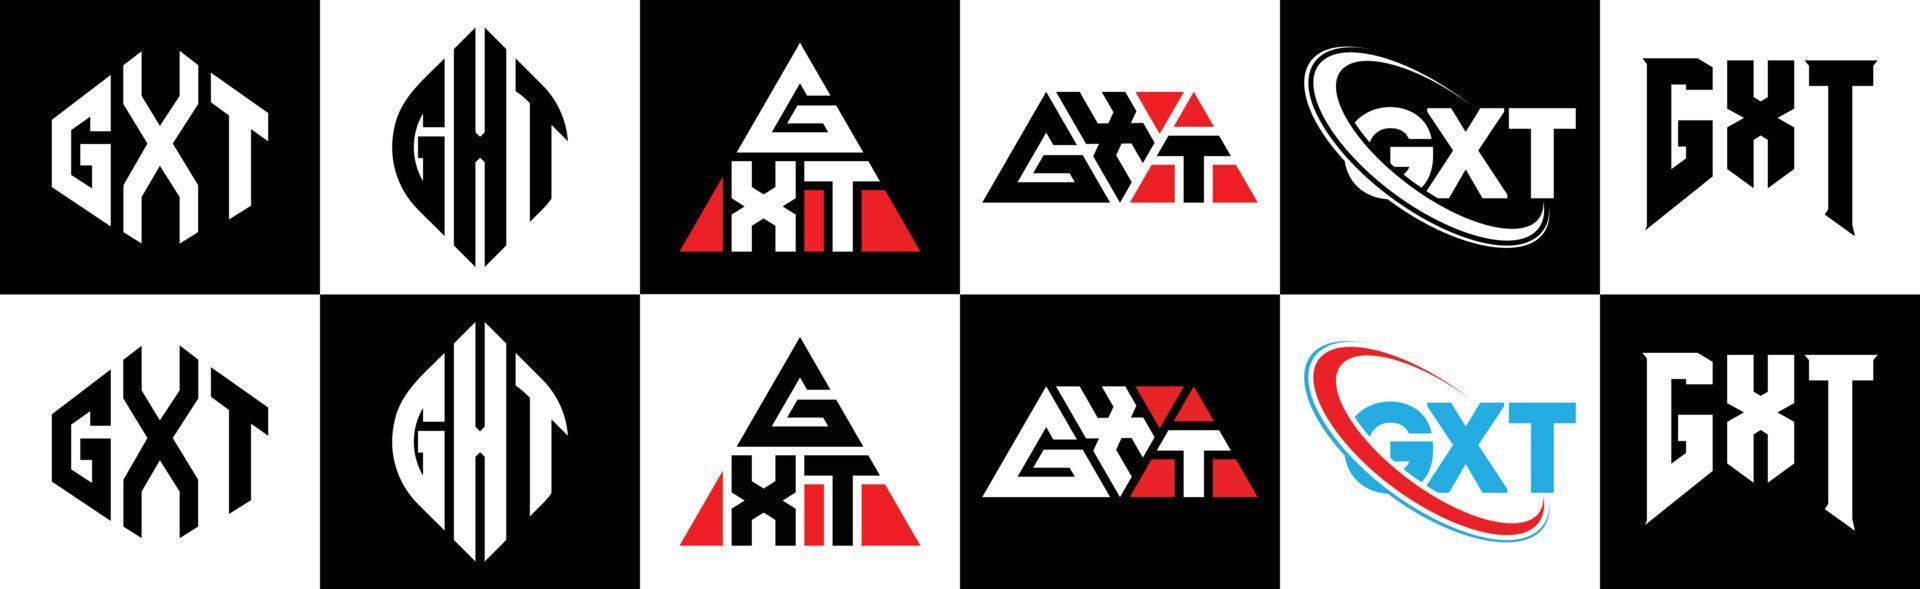 gxt-Buchstaben-Logo-Design in sechs Stilen. gxt polygon, kreis, dreieck, sechseck, flacher und einfacher stil mit schwarz-weißem buchstabenlogo in einer zeichenfläche. gxt minimalistisches und klassisches logo vektor